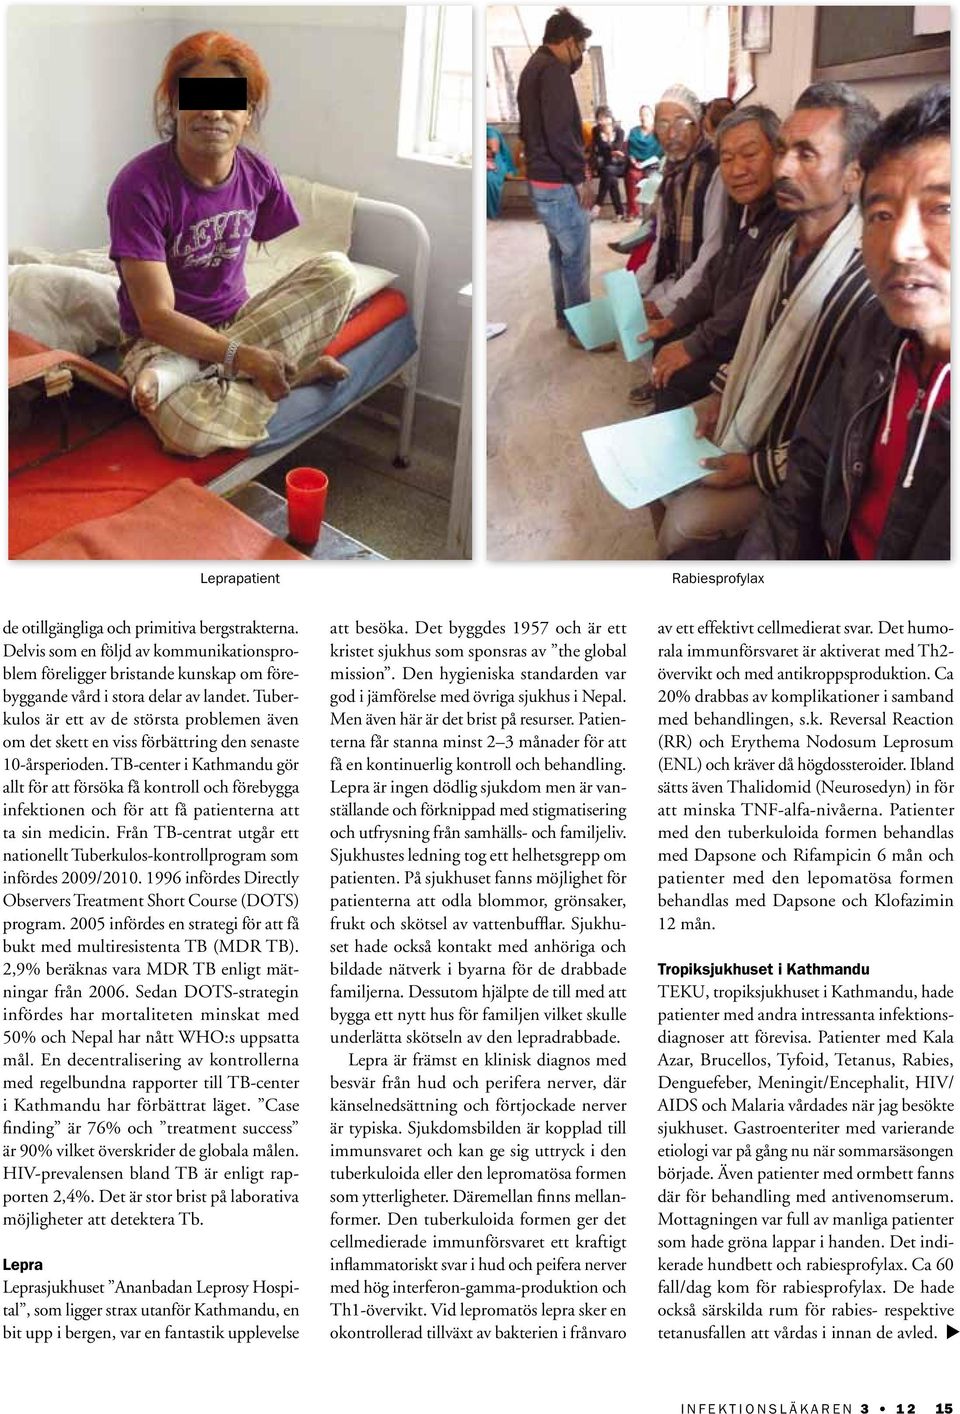 TB-center i Kathmandu gör allt för att försöka få kontroll och förebygga infektionen och för att få patienterna att ta sin medicin.